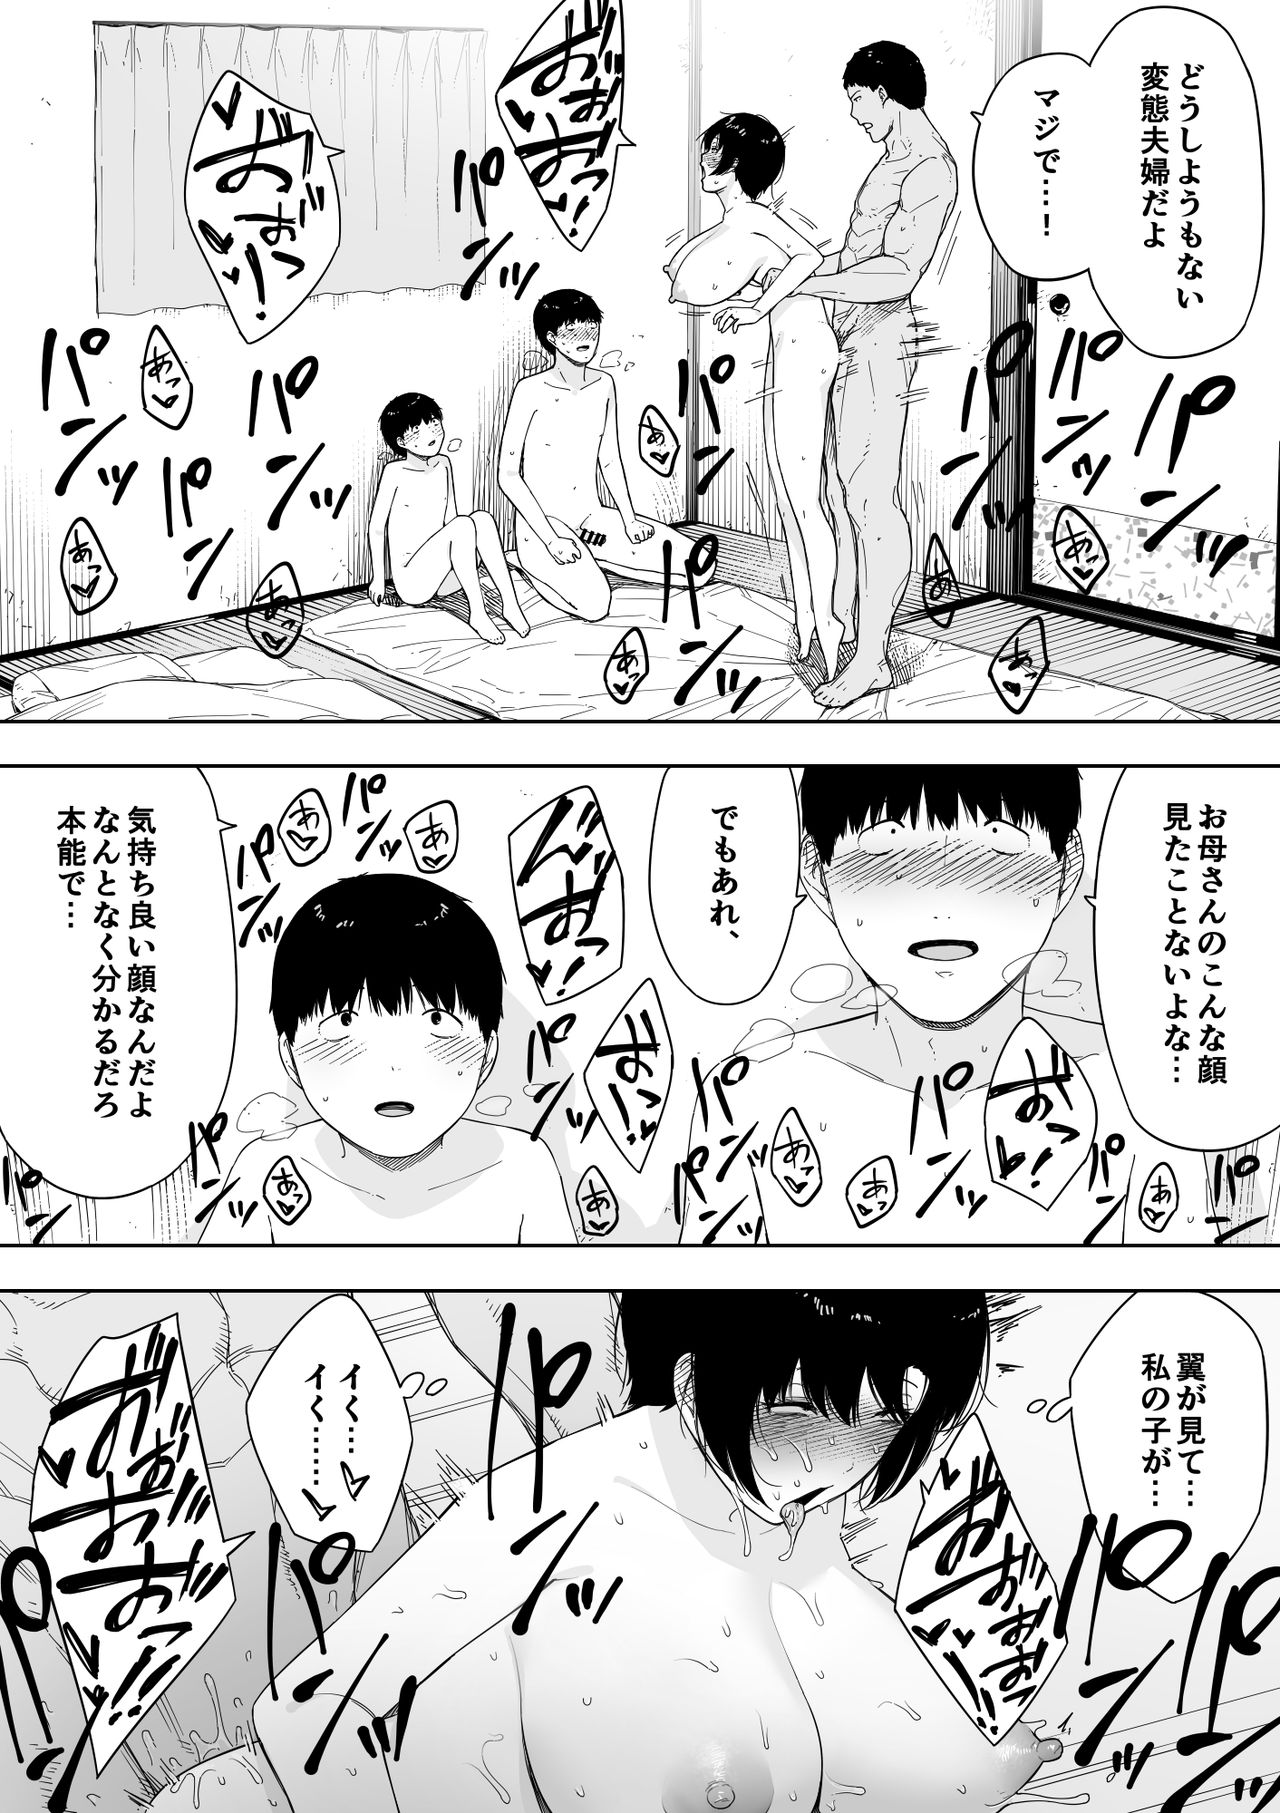 [NT Labo (NT Robo)] Aisai, Doui no Ue, Netorare 4 ~Iwashita-ke no Haha~ page 39 full